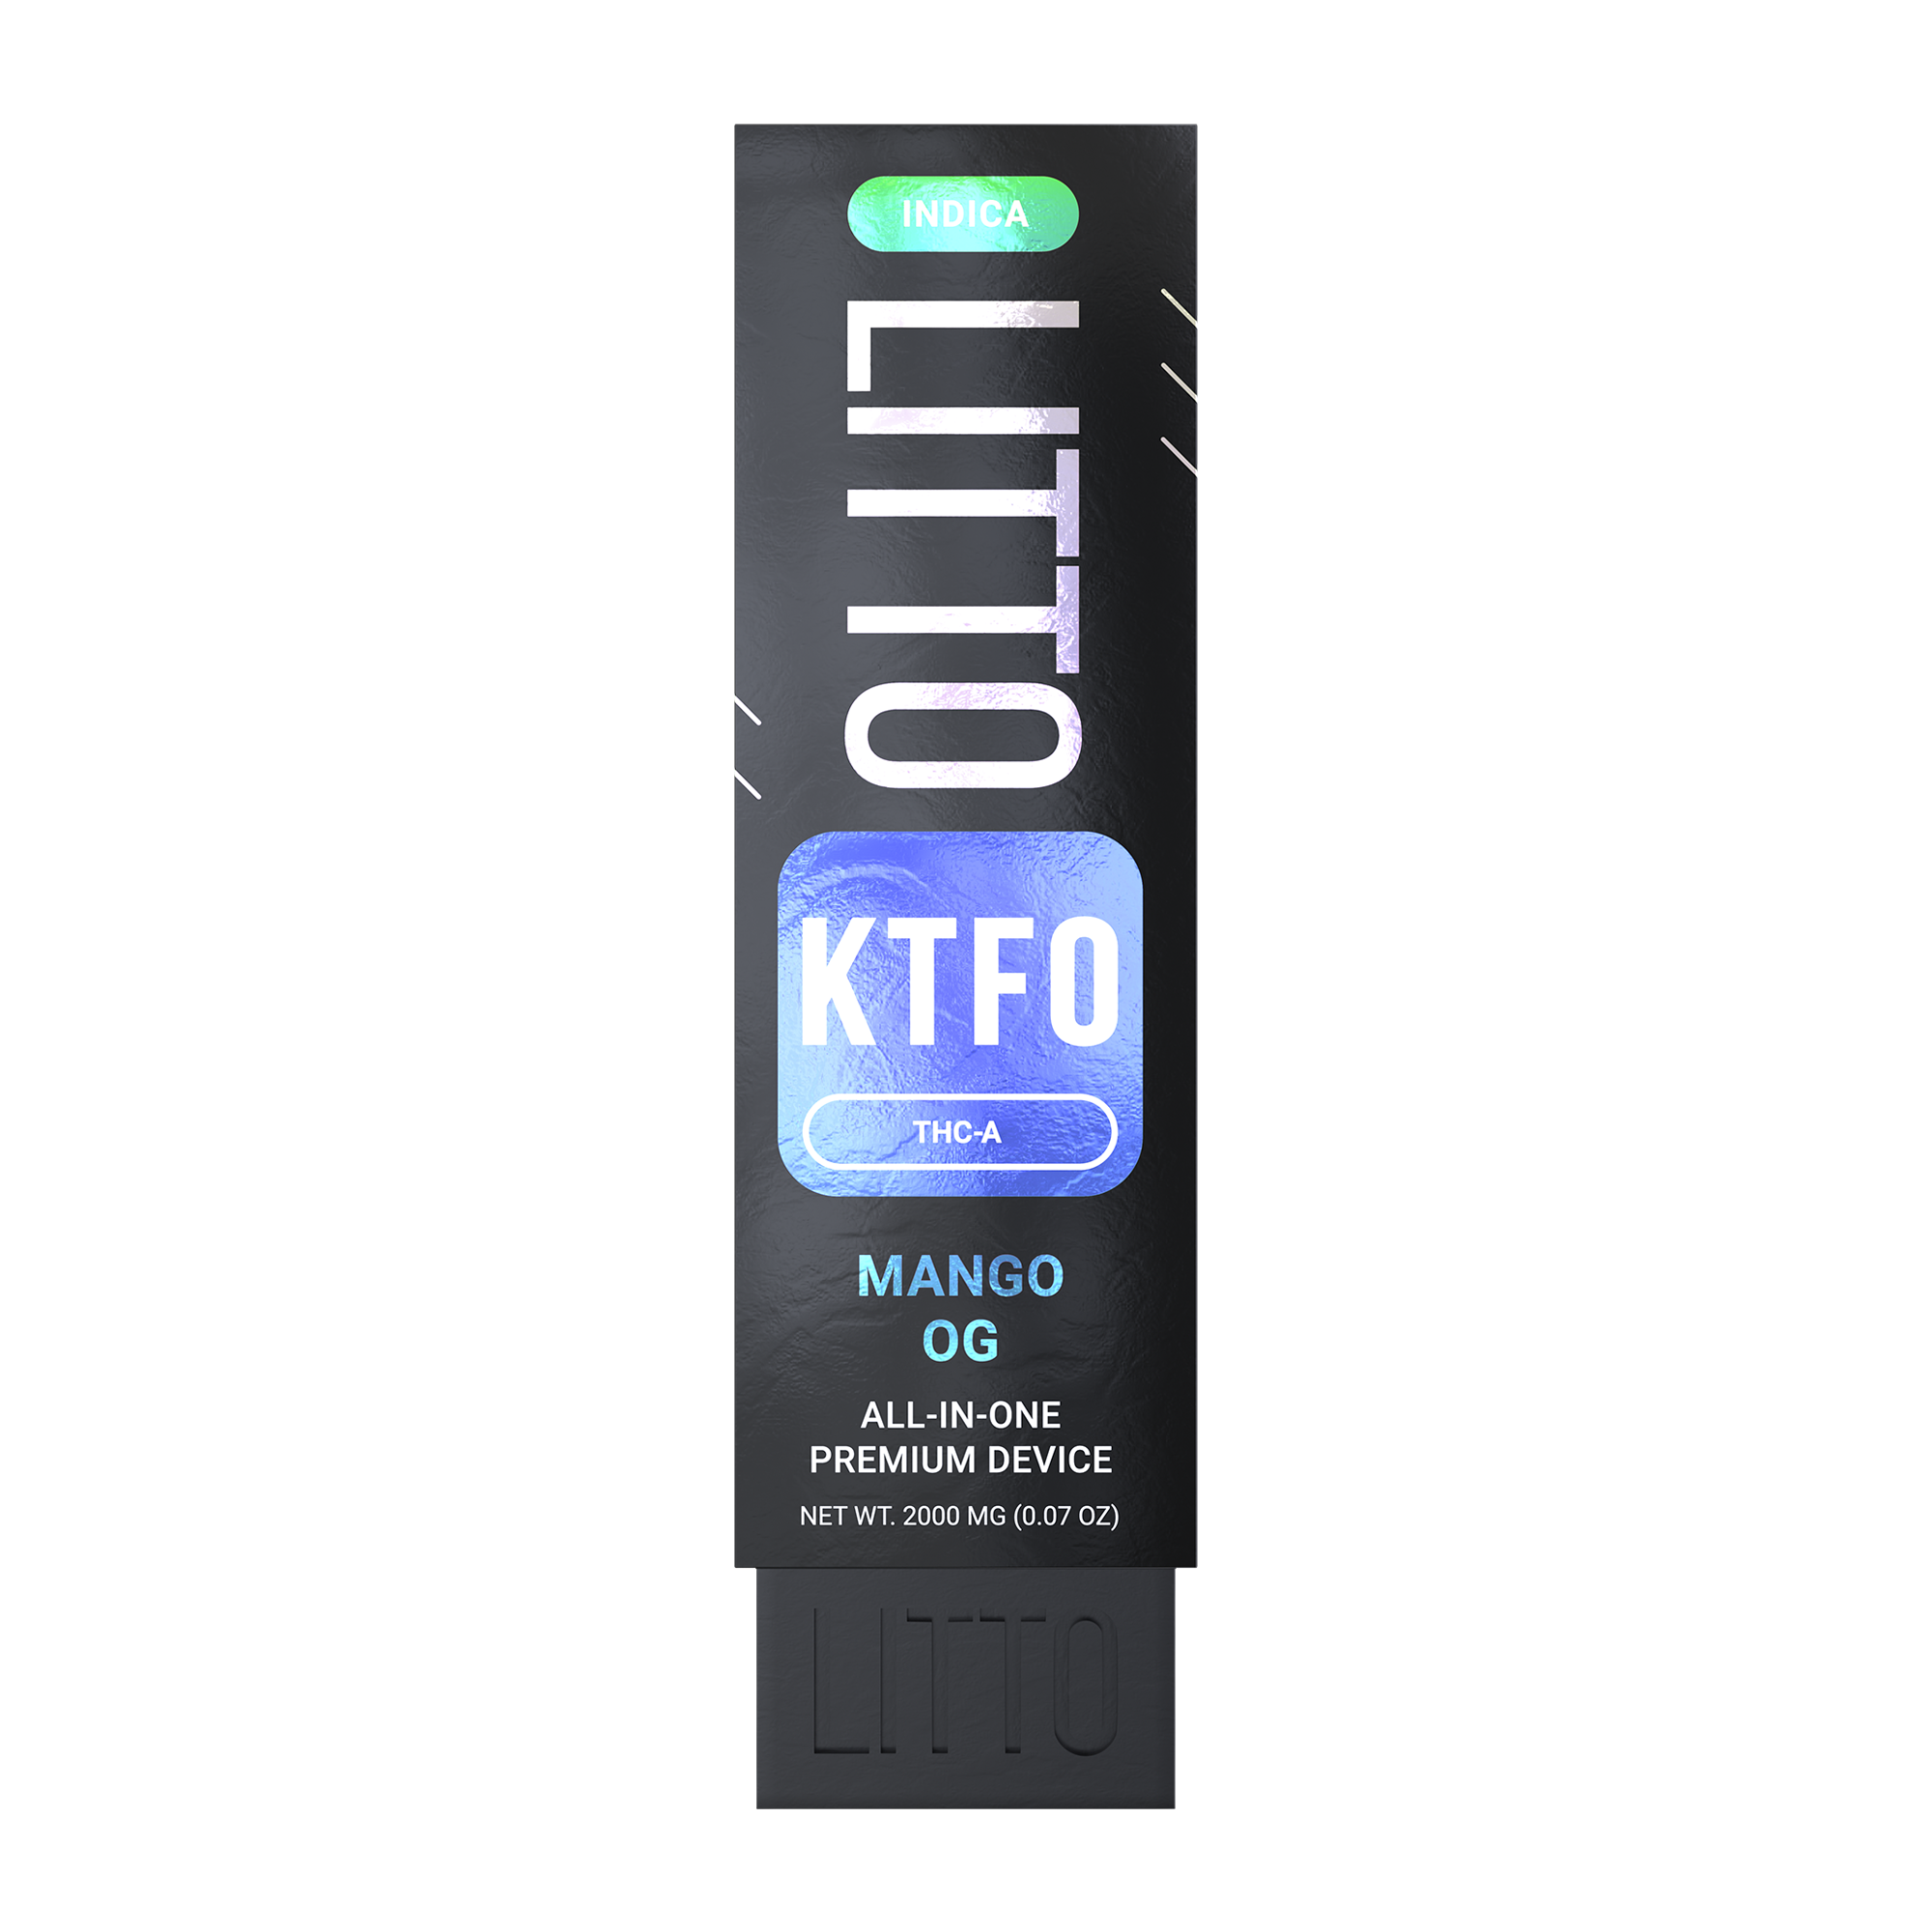 All-in-One Device - KTFO - THCA - Mango OG - 2G